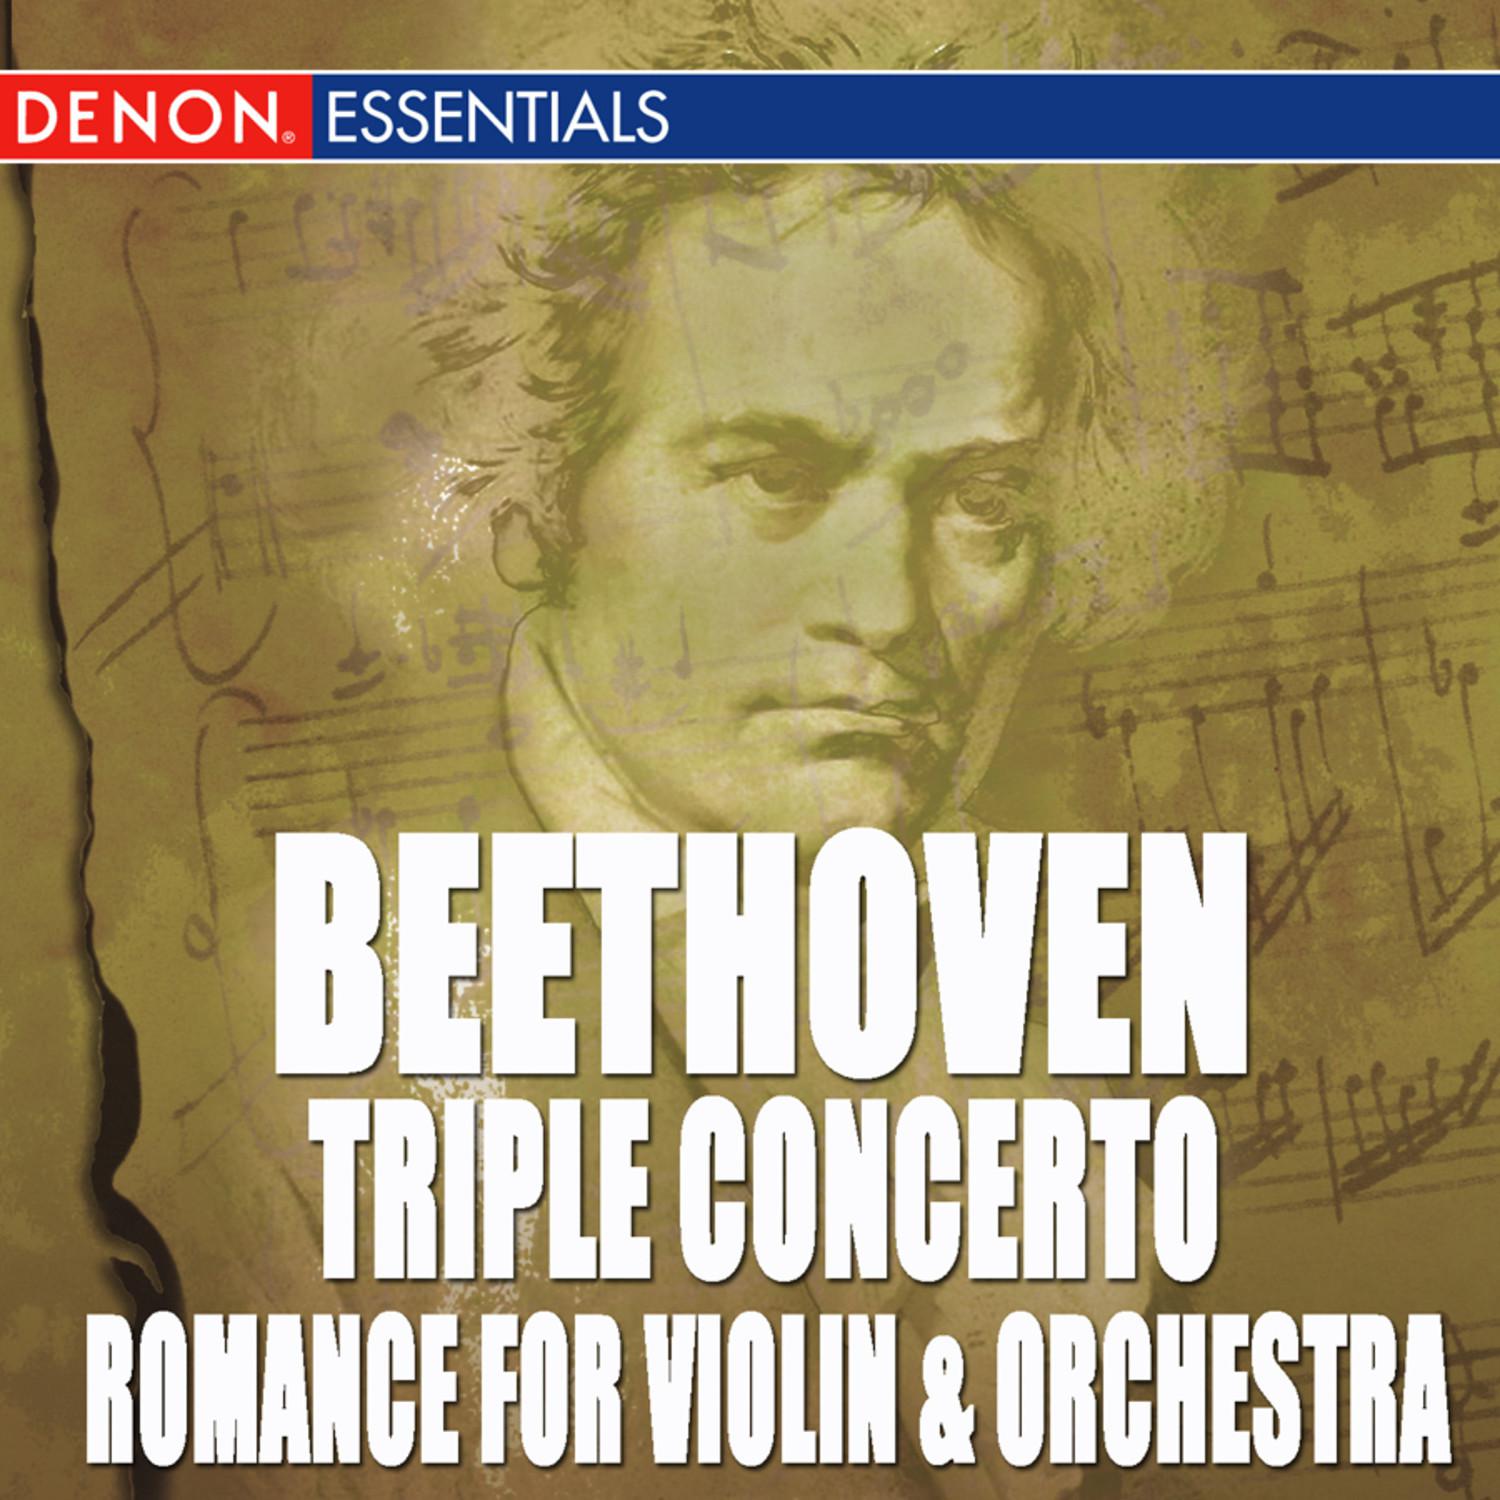 Concerto for Violin, Cello, Piano and Orchestra in C Major, Op. 56: I. Allegro